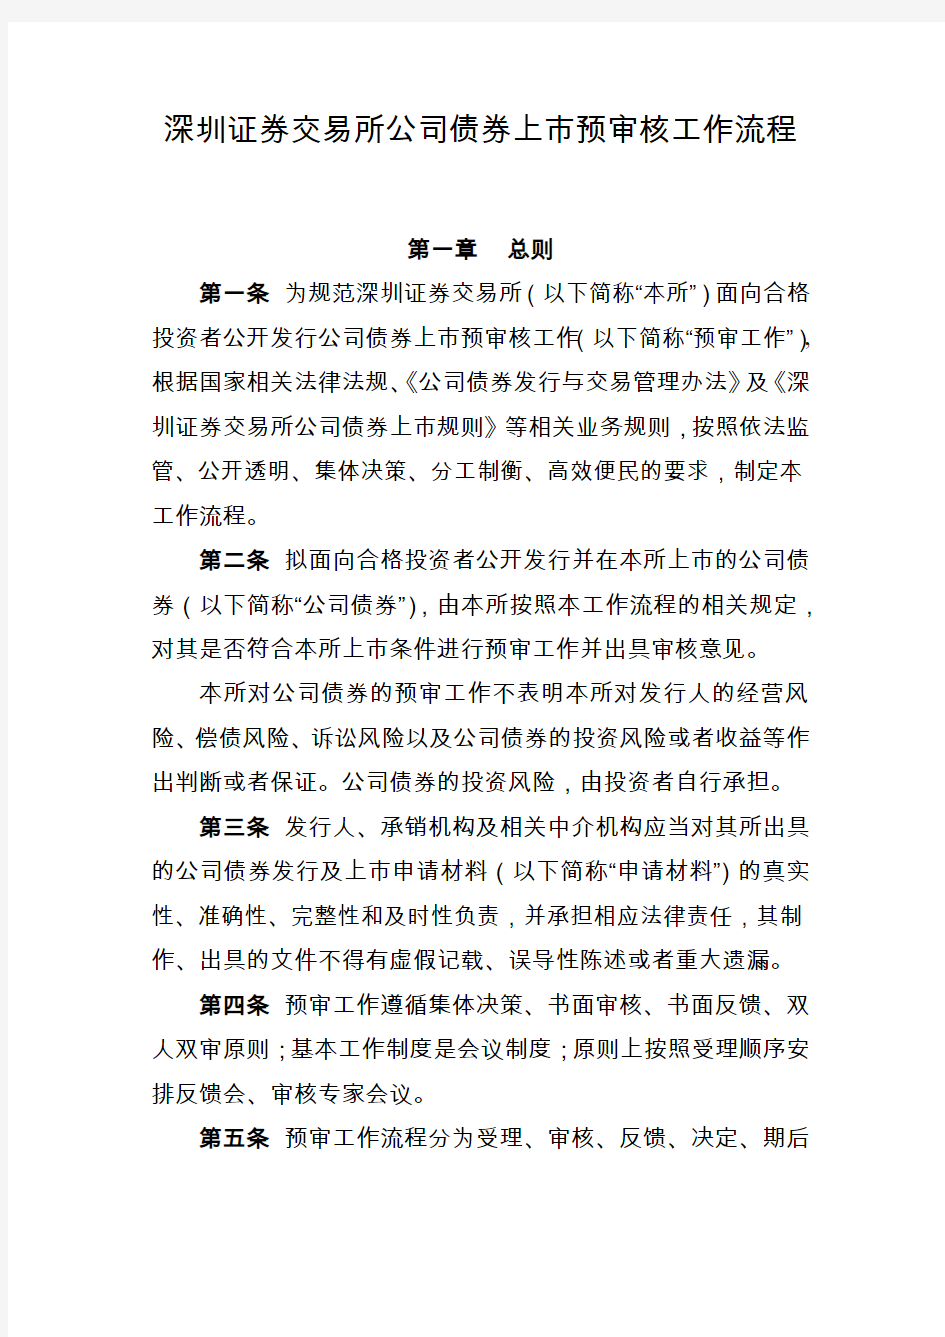 20150520《深圳证券交易所公司债券上市预审核工作流程》